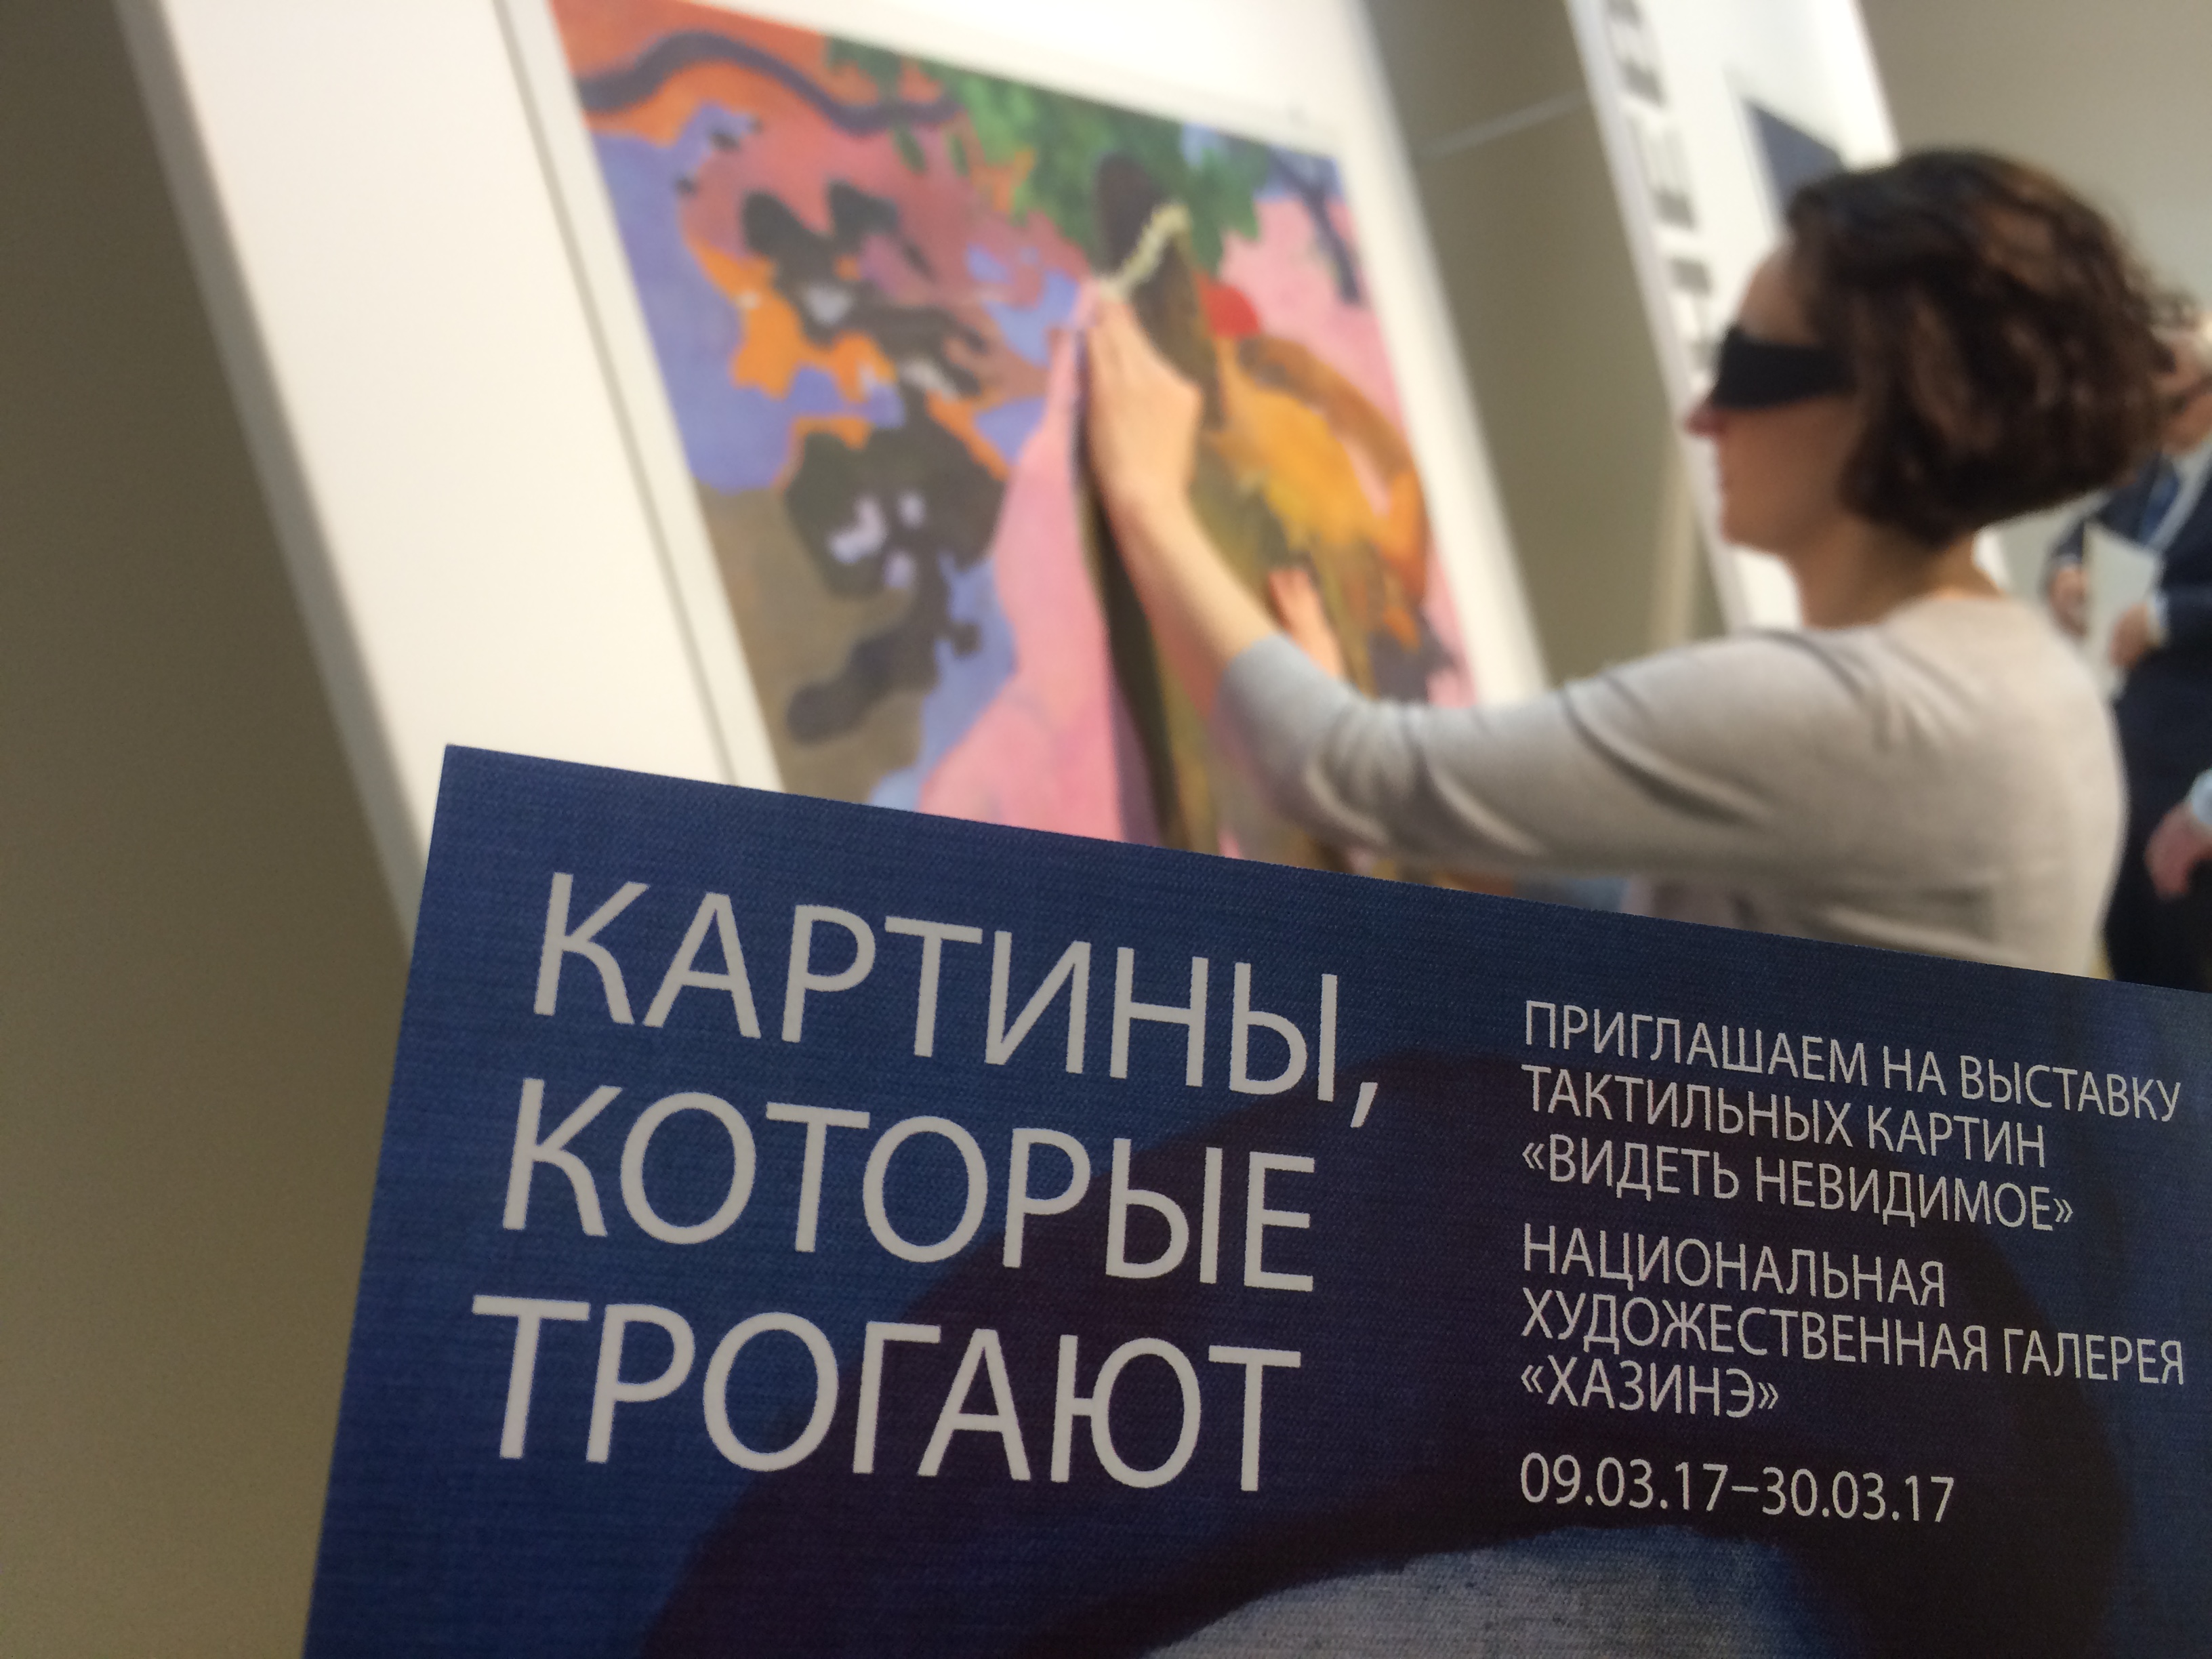 Выставка &quot;Видеть невидимое&quot; пробудет в Казани до 30 марта.